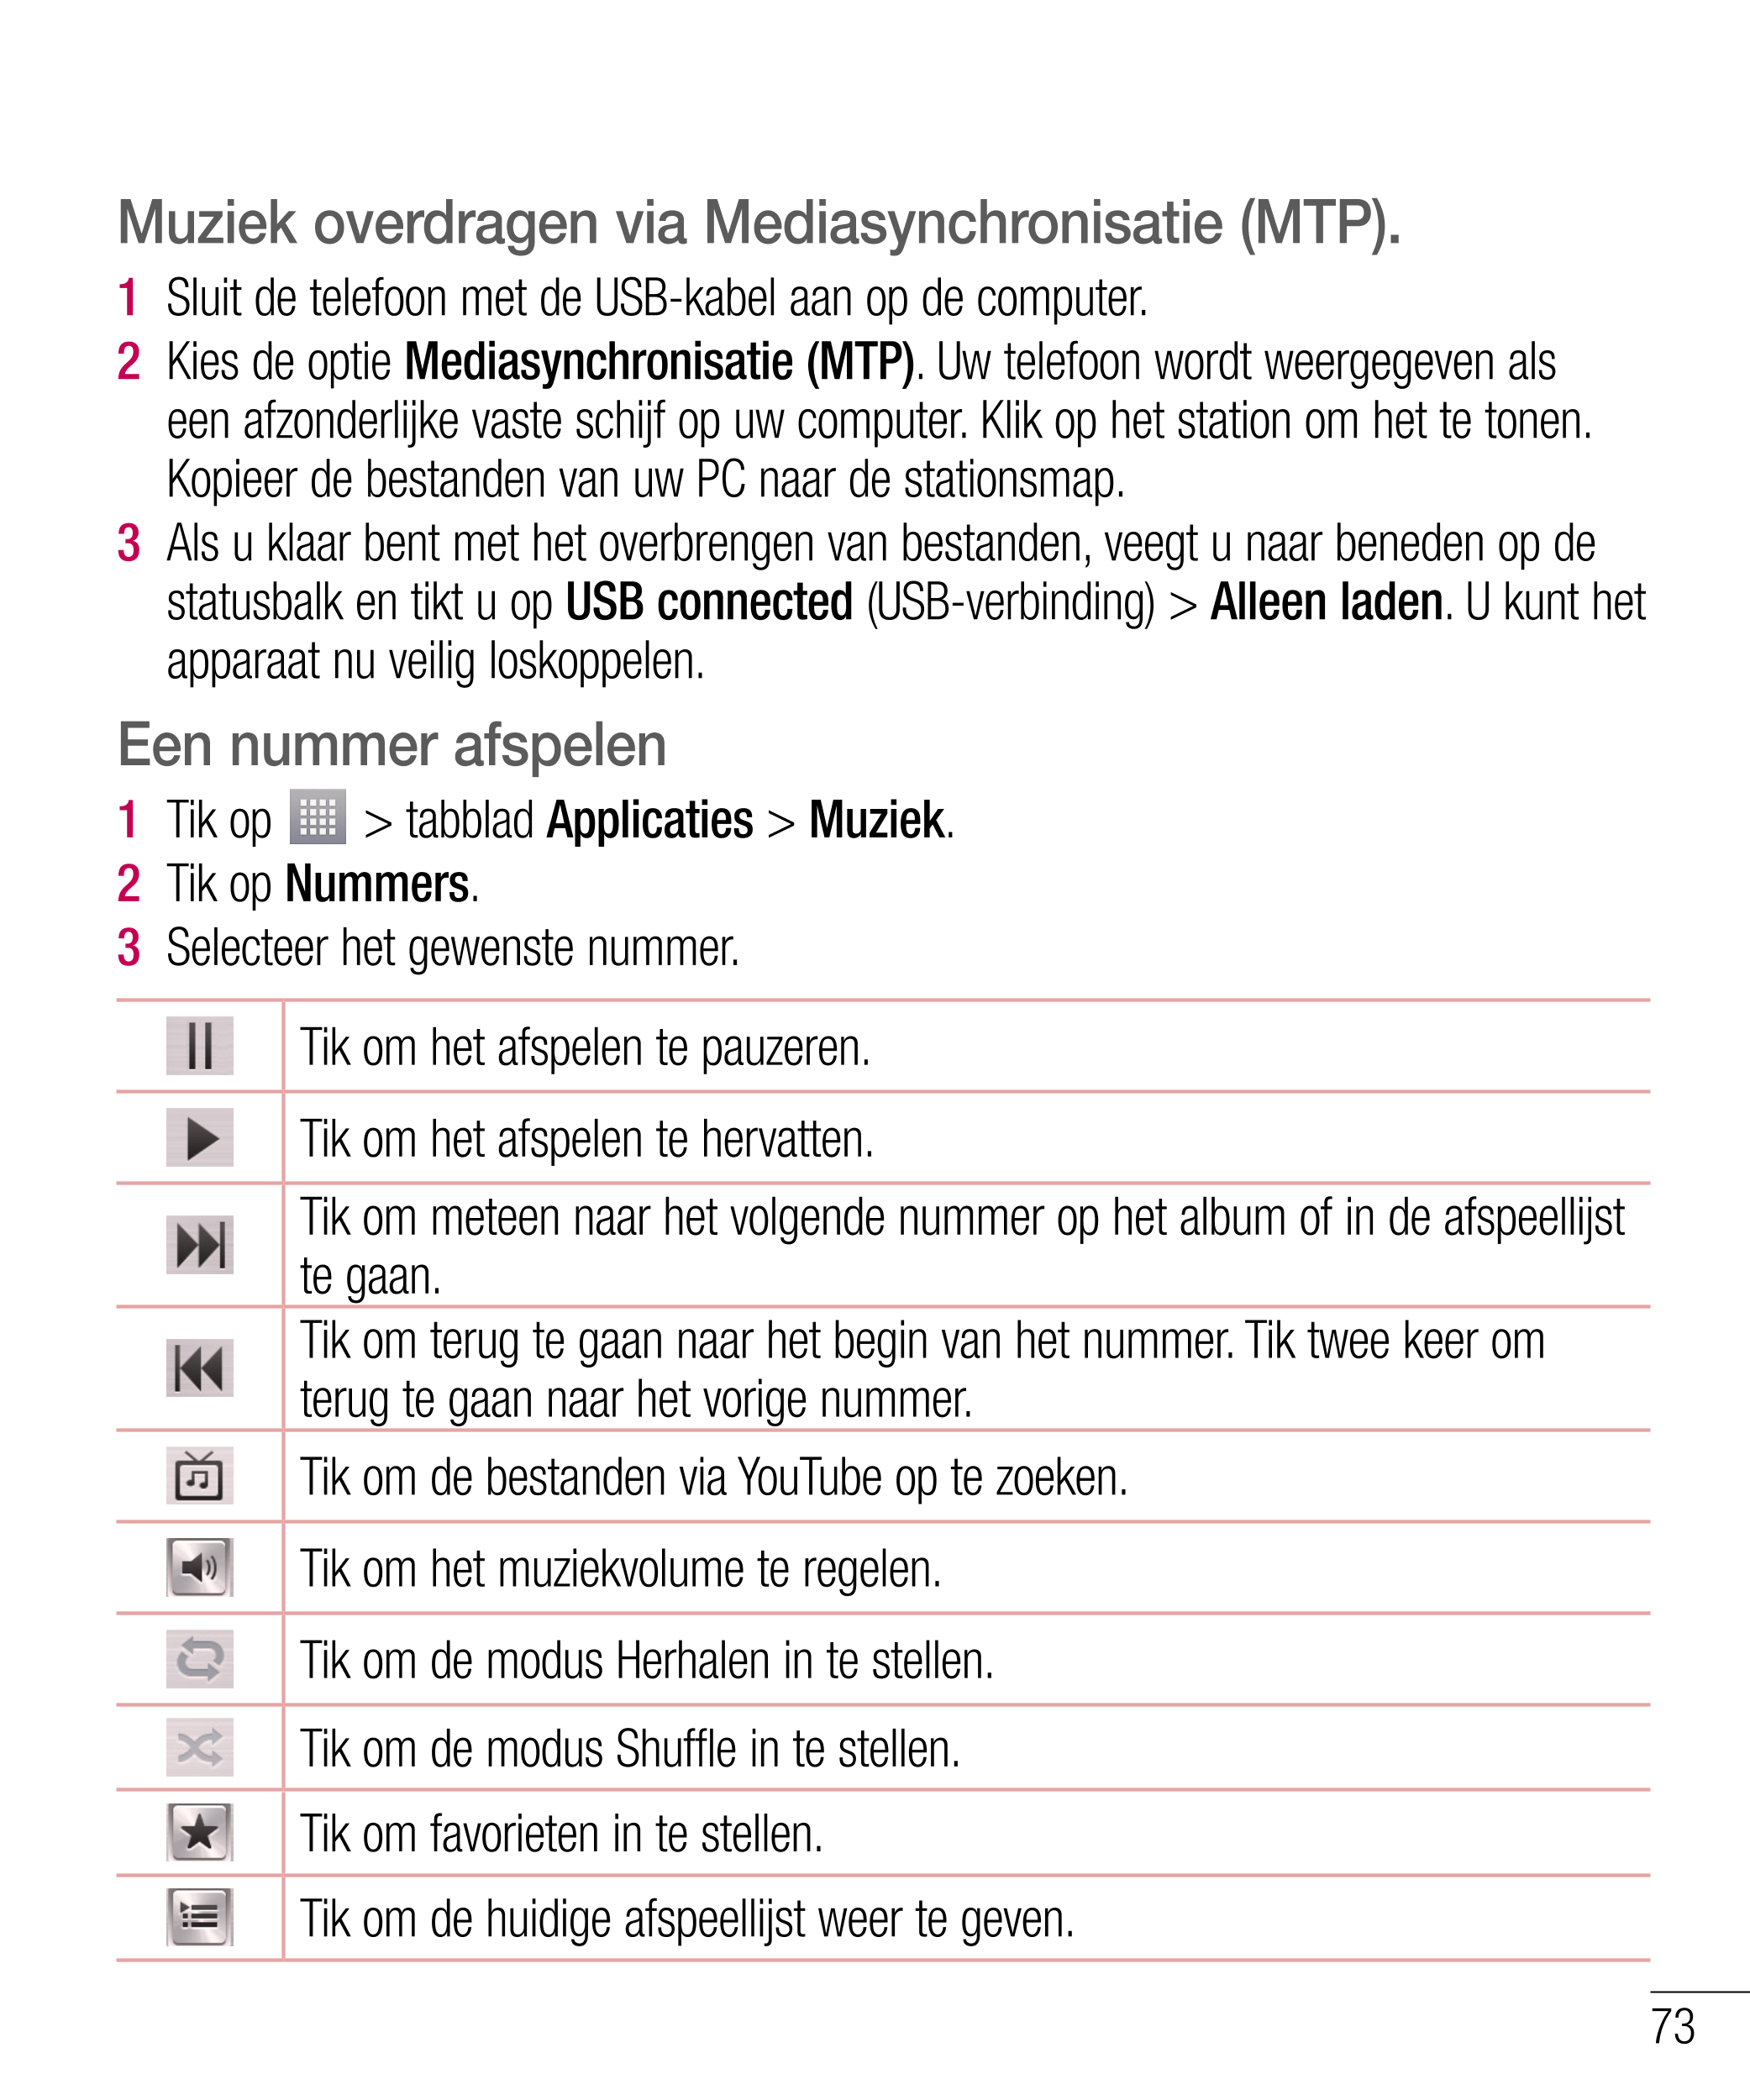 Muziek overdragen via Mediasynchronisatie (MTP).
1    Sluit de telefoon met de USB-kabel aan op de computer.
2    Kies de optie 